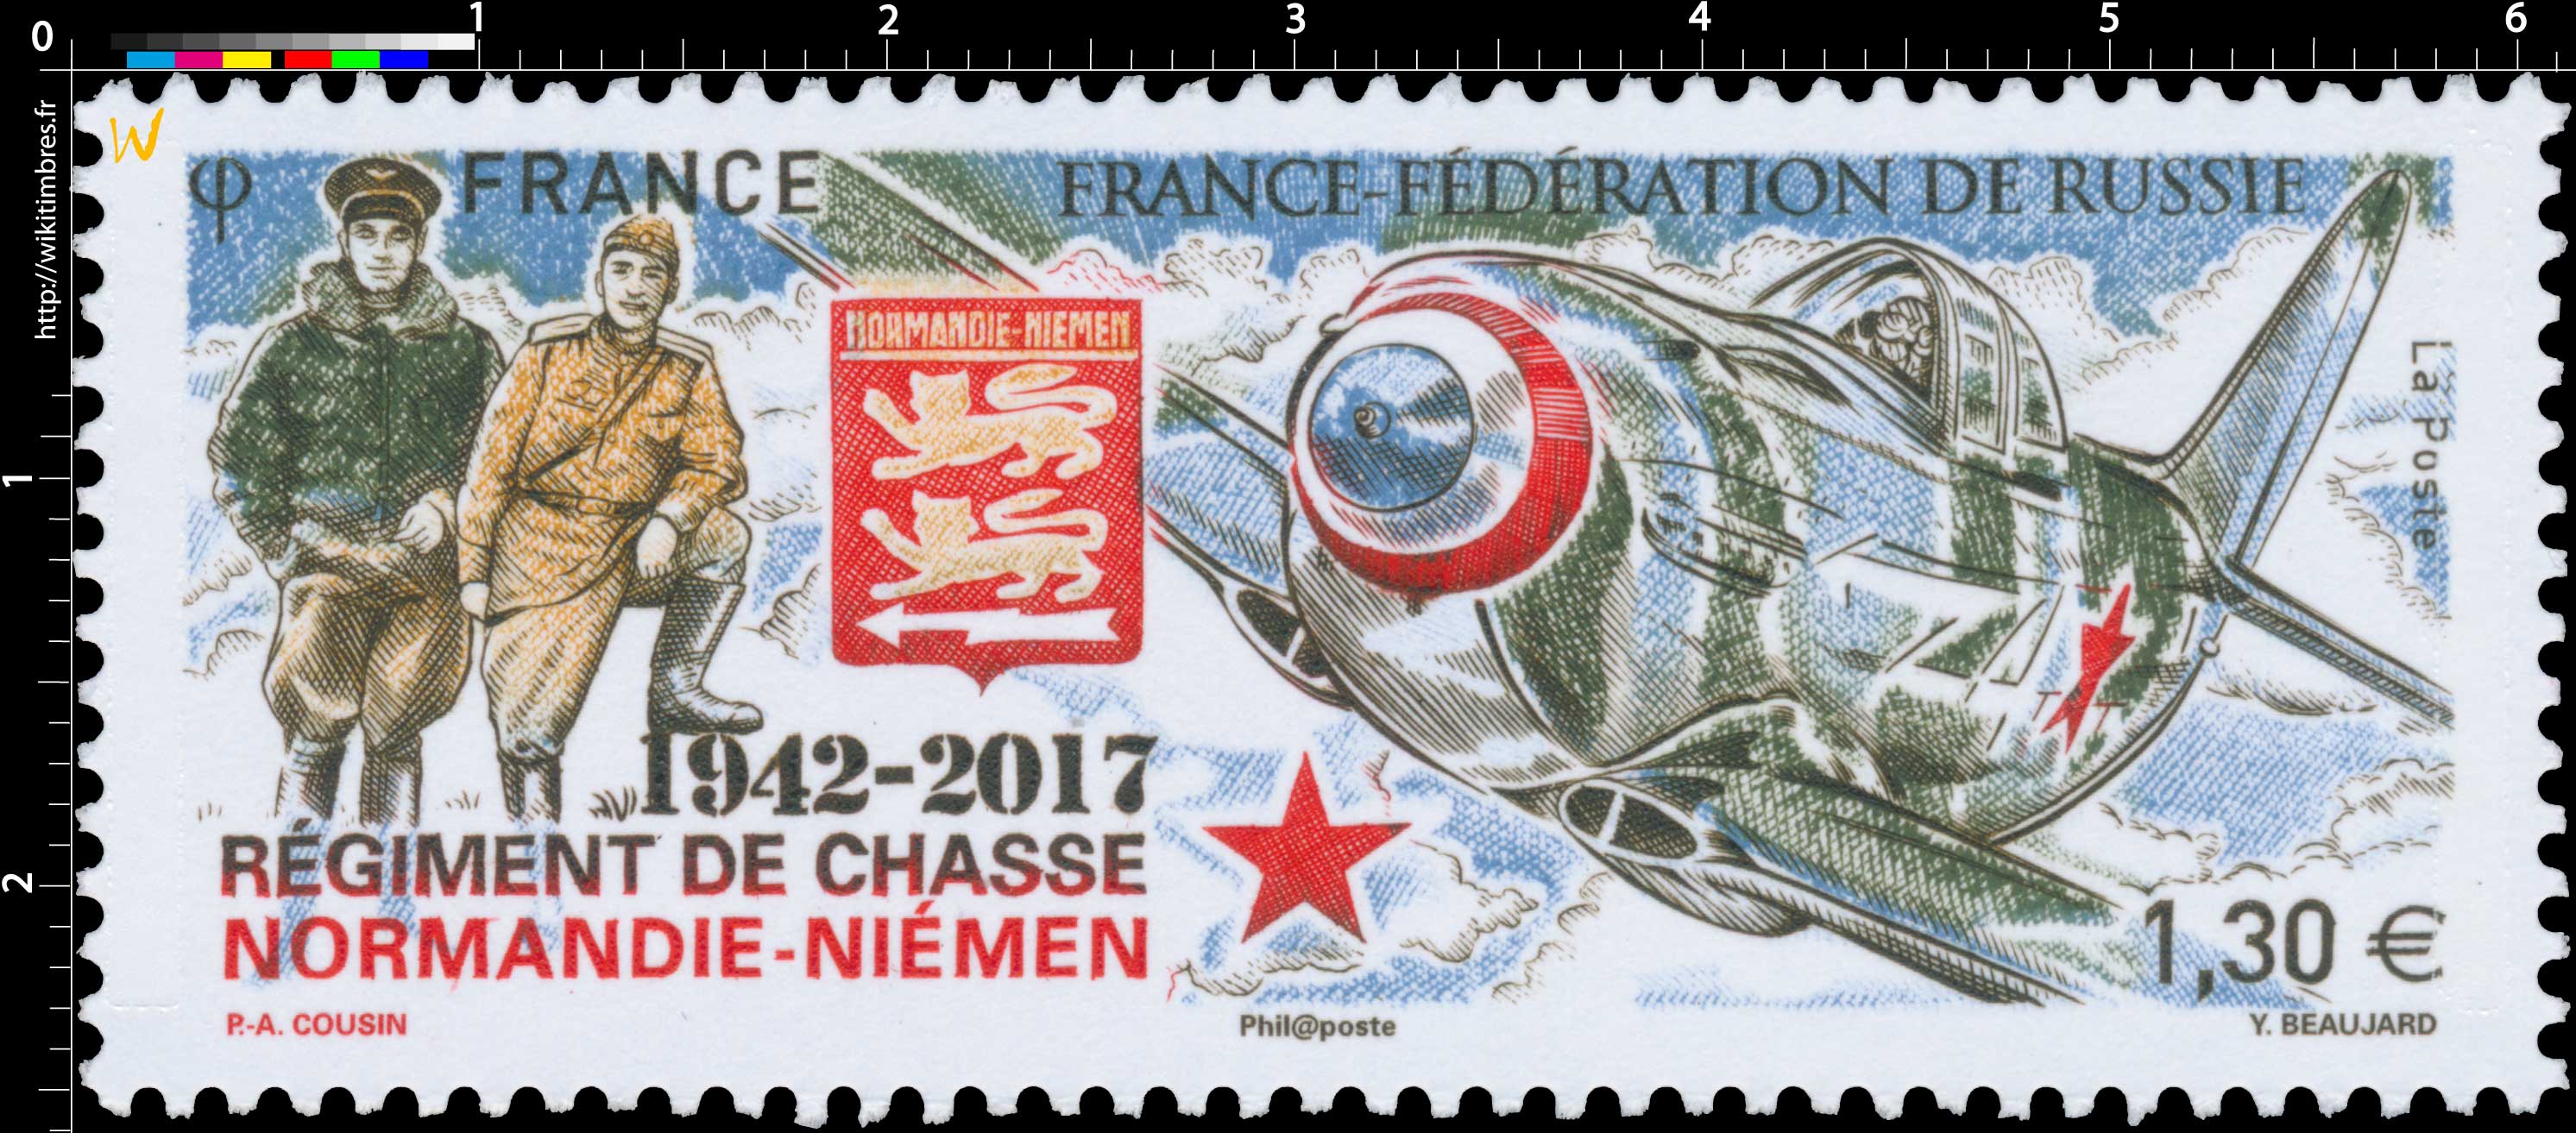 2017 France-Fédération de Russie - 1942 - 2017 Régiment de chasse Normandie - Niémen